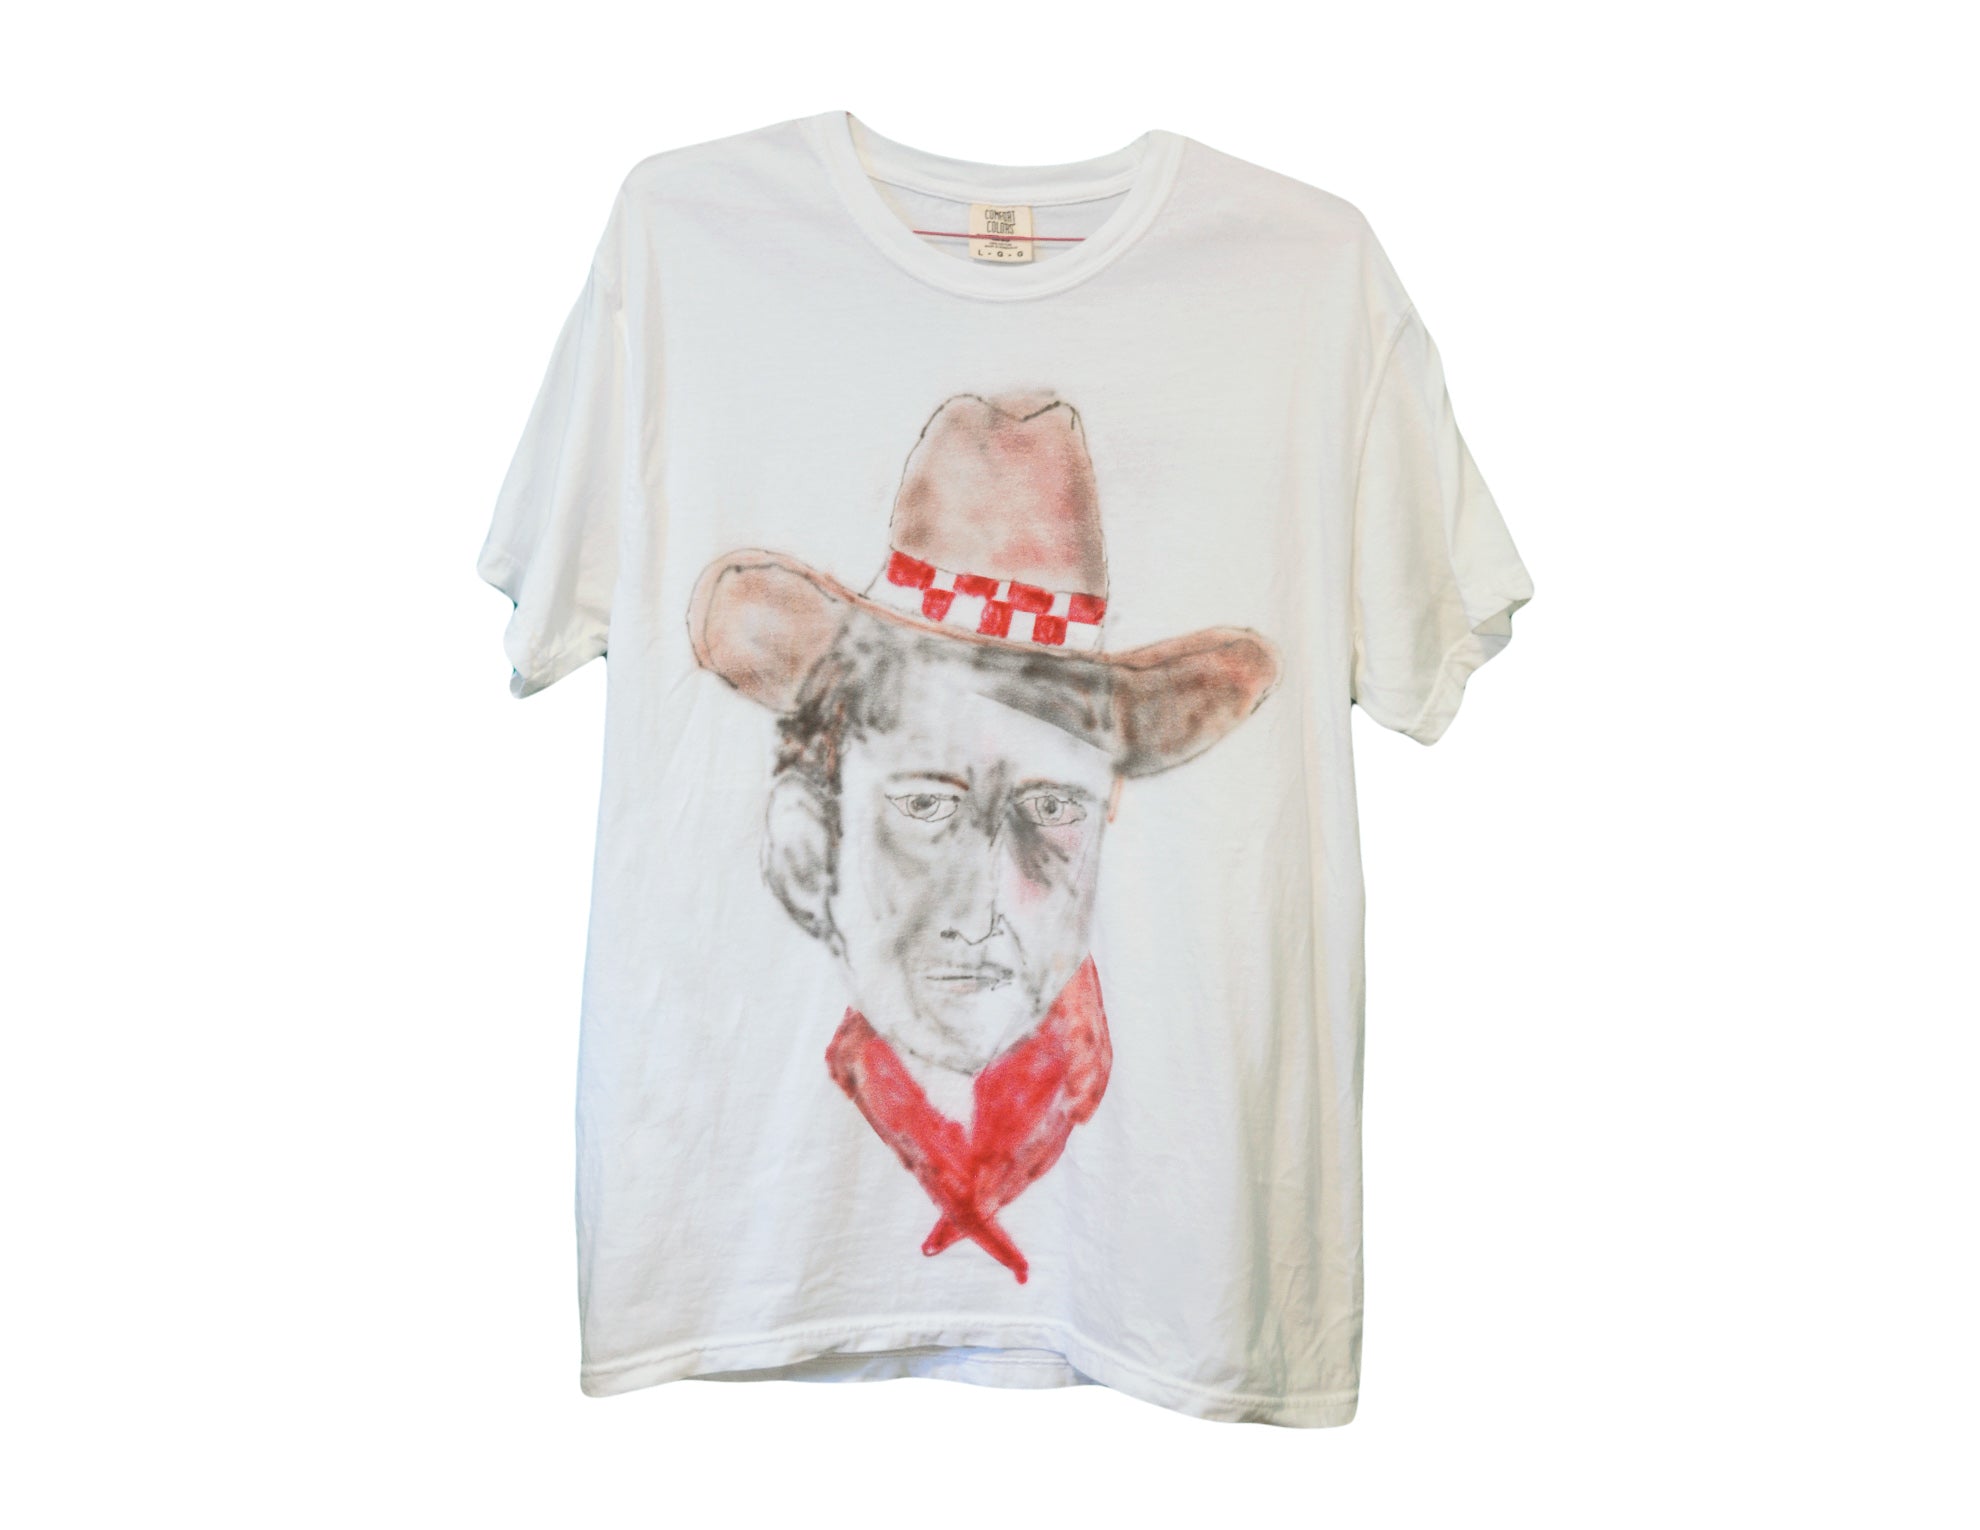 Cowboy Portrait Shirt - Large